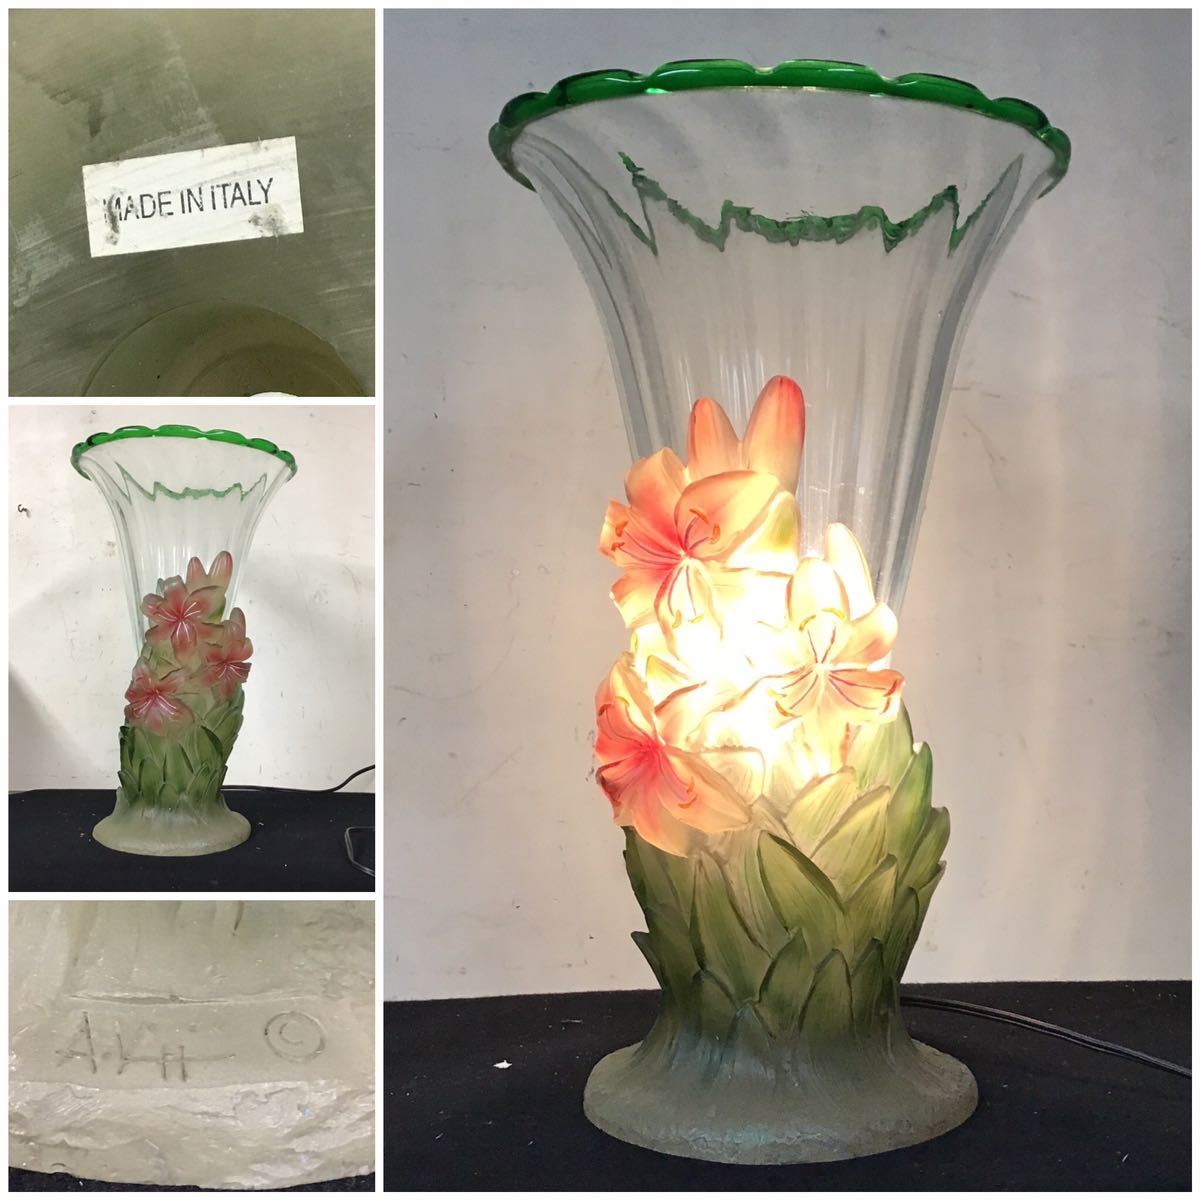  стол лампа Vintage ночник освещение автор предмет MADE IN ITALY Италия производства стеклянный античный 